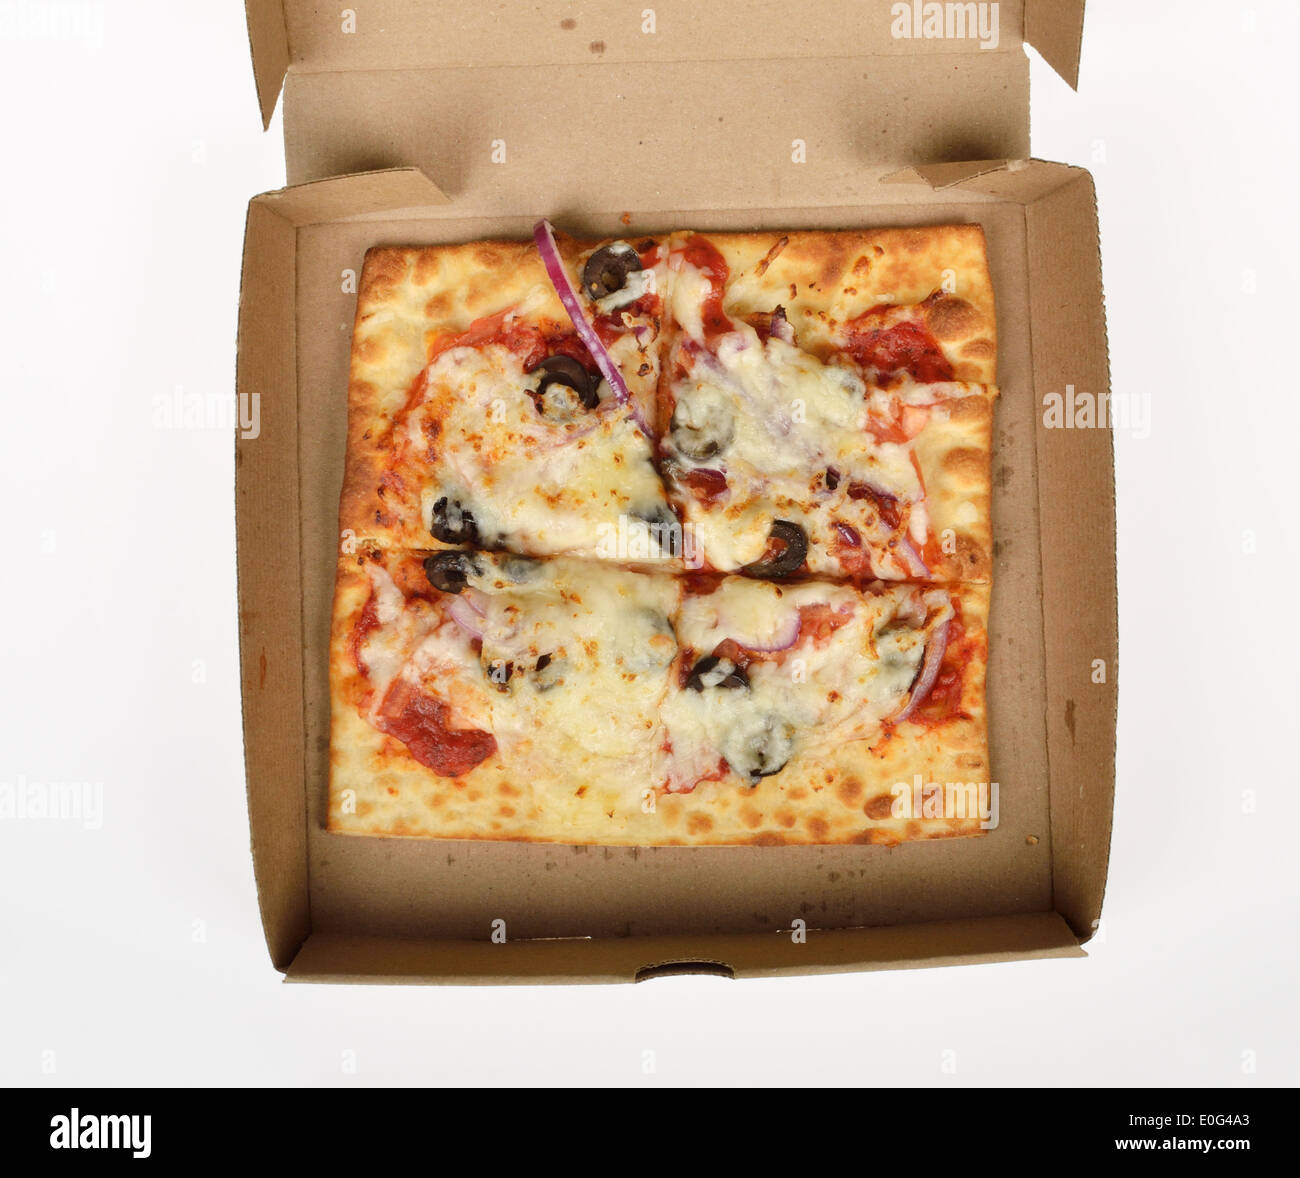 U-Bahn Fast-Food Flatizza Käse quadratische Pizza in Box-Verpackung auf weißem Hintergrund, USA. Stockfoto